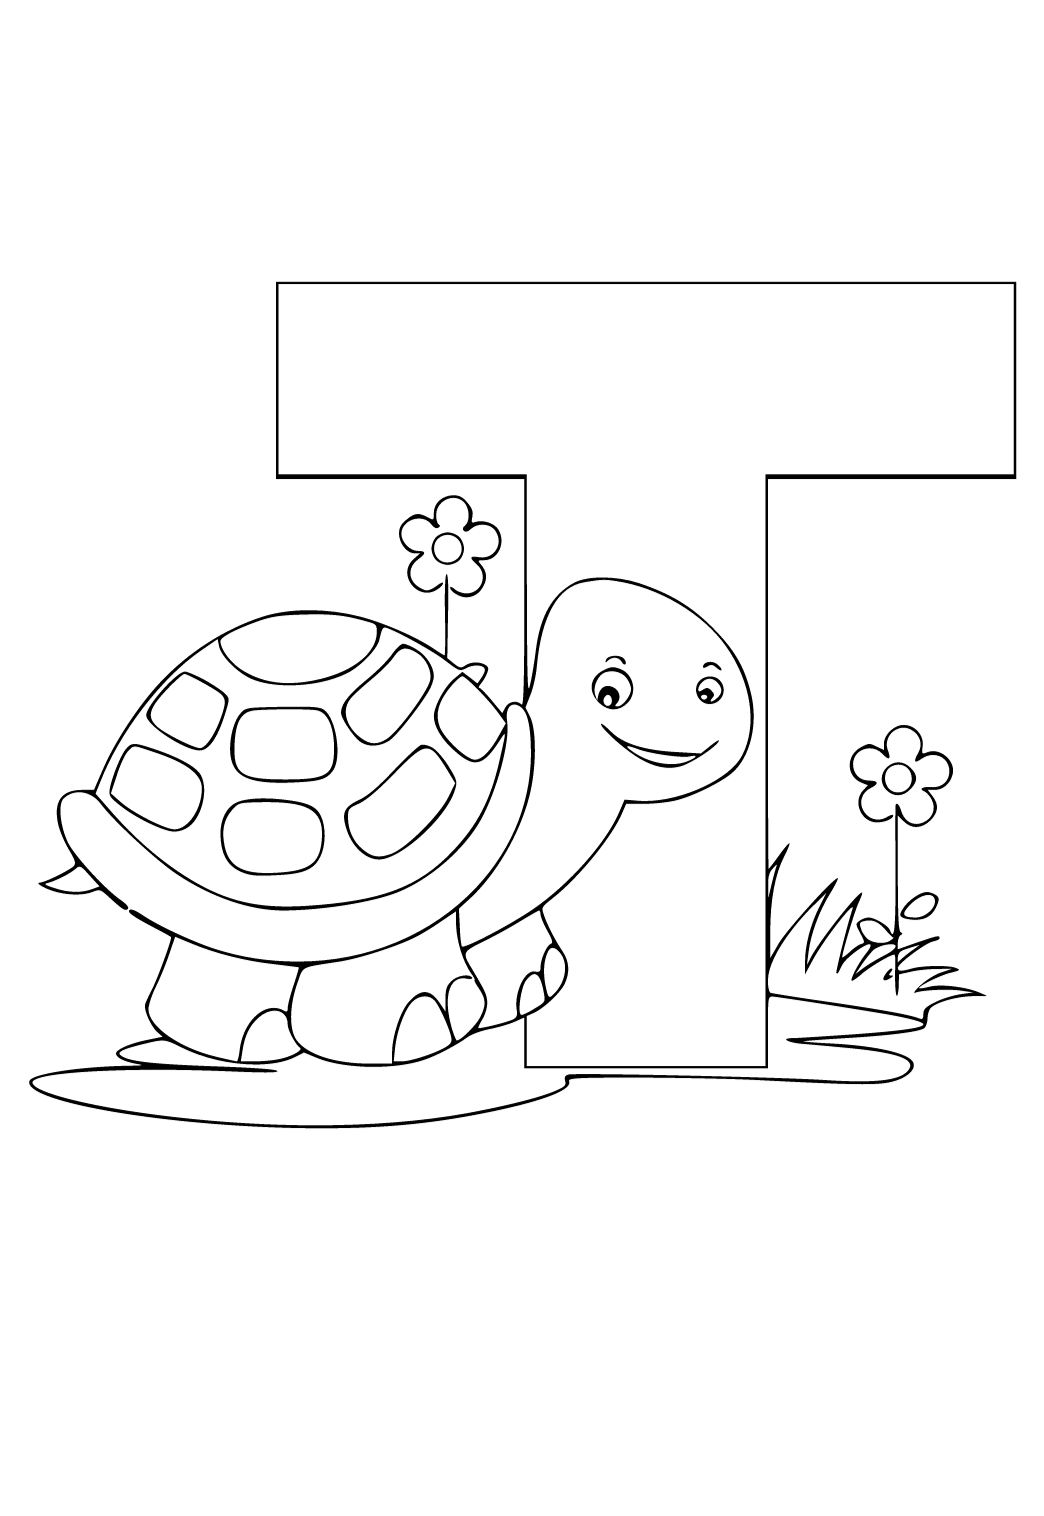 Hướng dẫn cách vẽ CON RÙA - Tô màu con Rùa - How to draw Turtle - YouTube